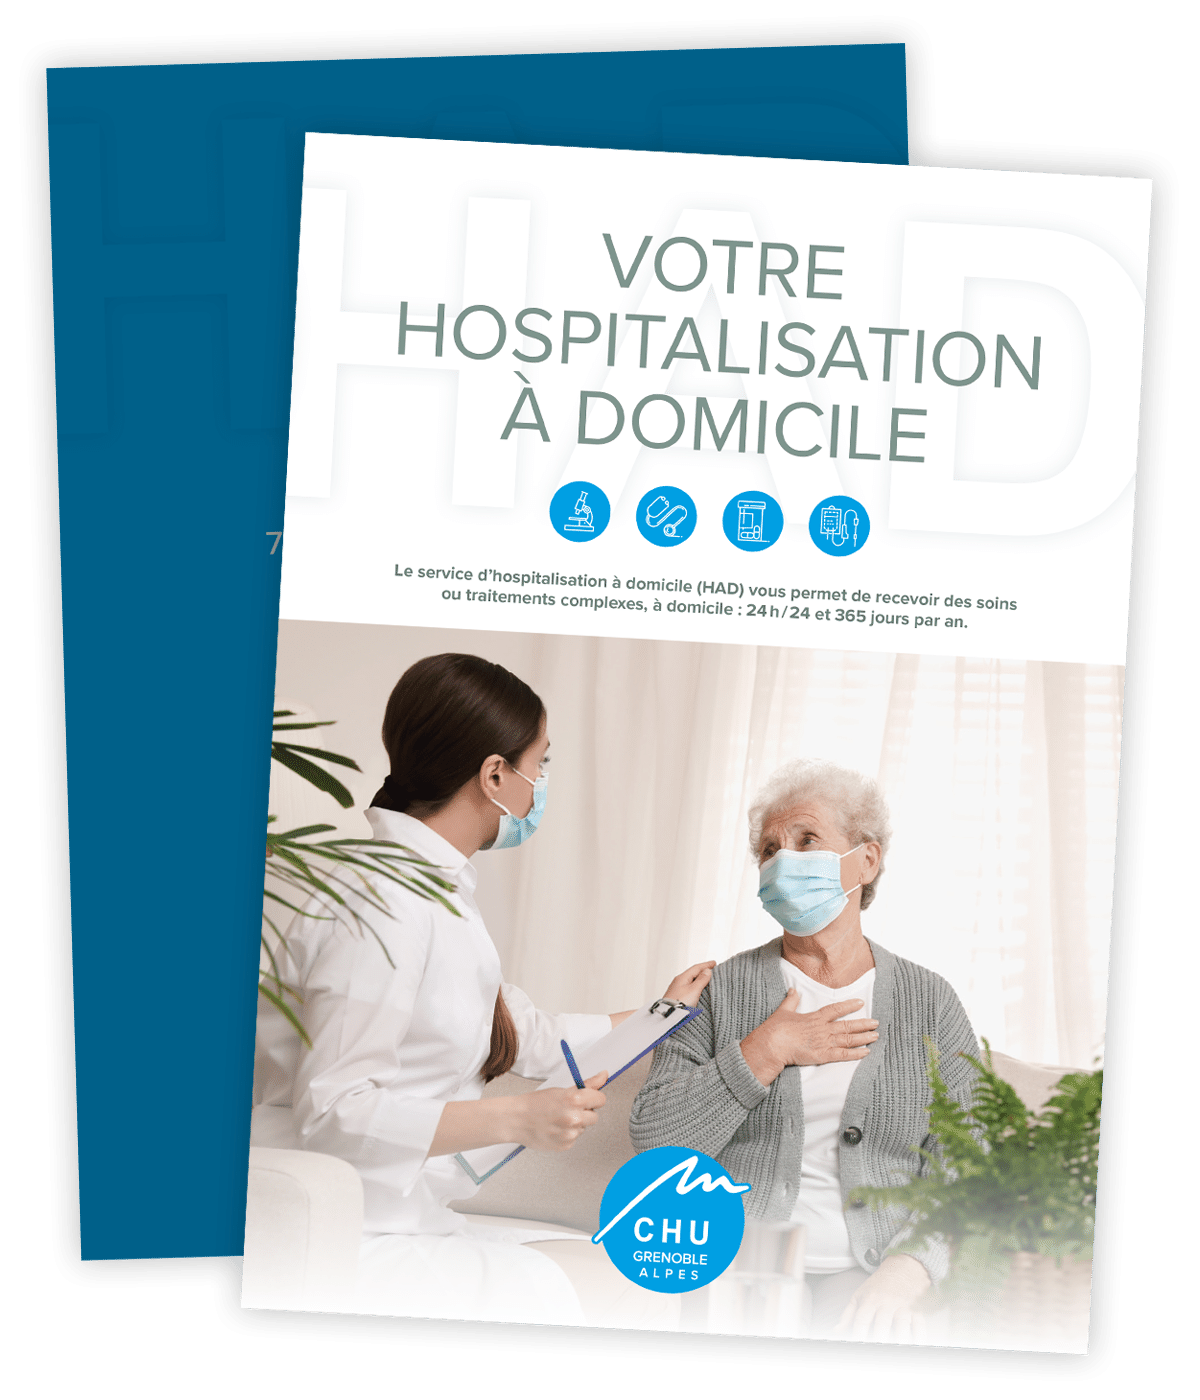 Guide de l'hospitalisation à domicile créé pour le CHU Grenoble-Alpes par Caramel & Paprika - Couverture et dos de la pochette à rabats (photo Adobe Stock)